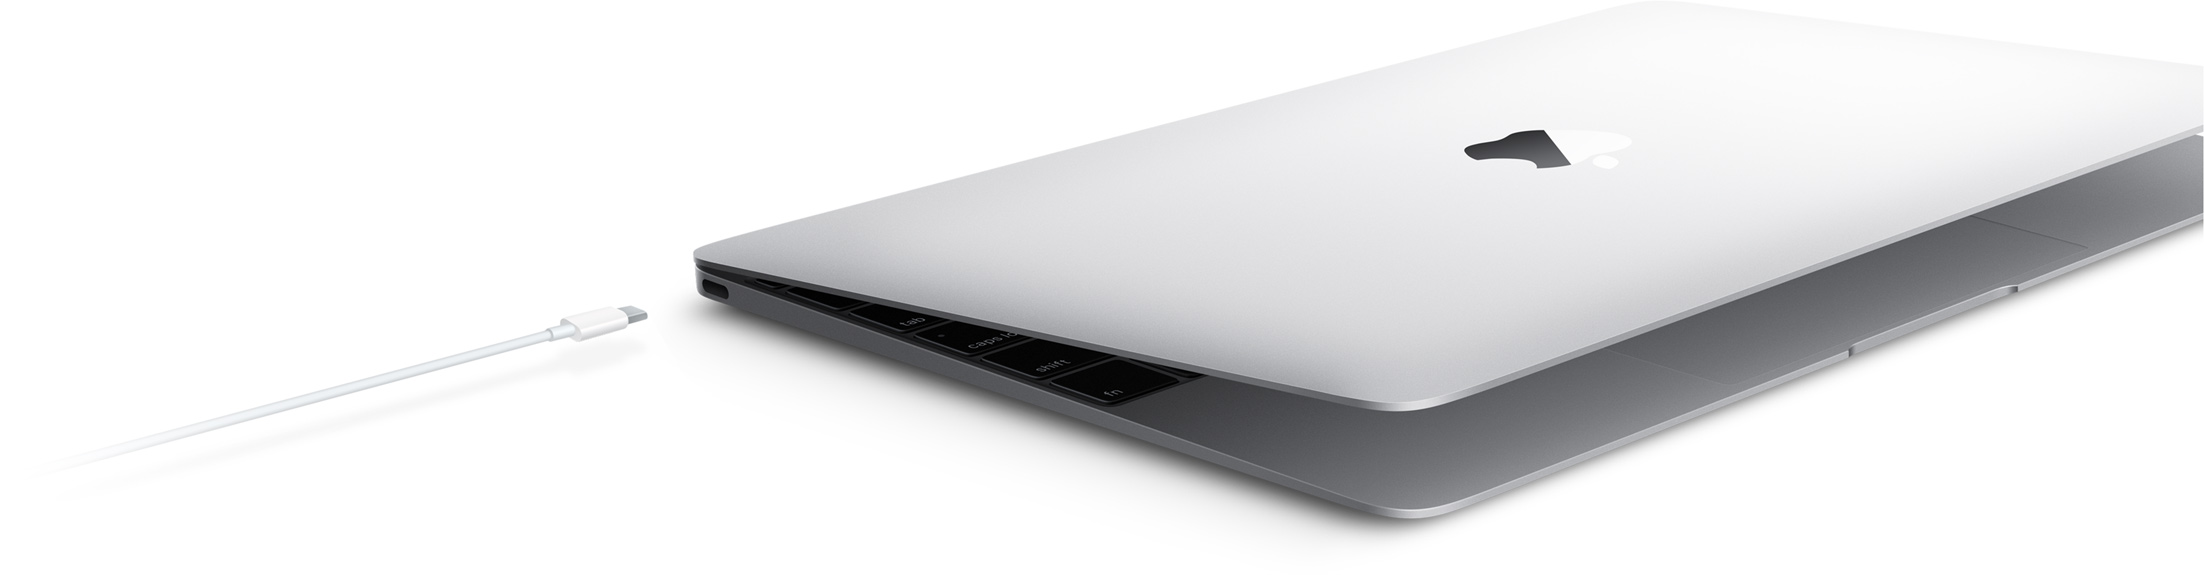 New MacBook 2015 03